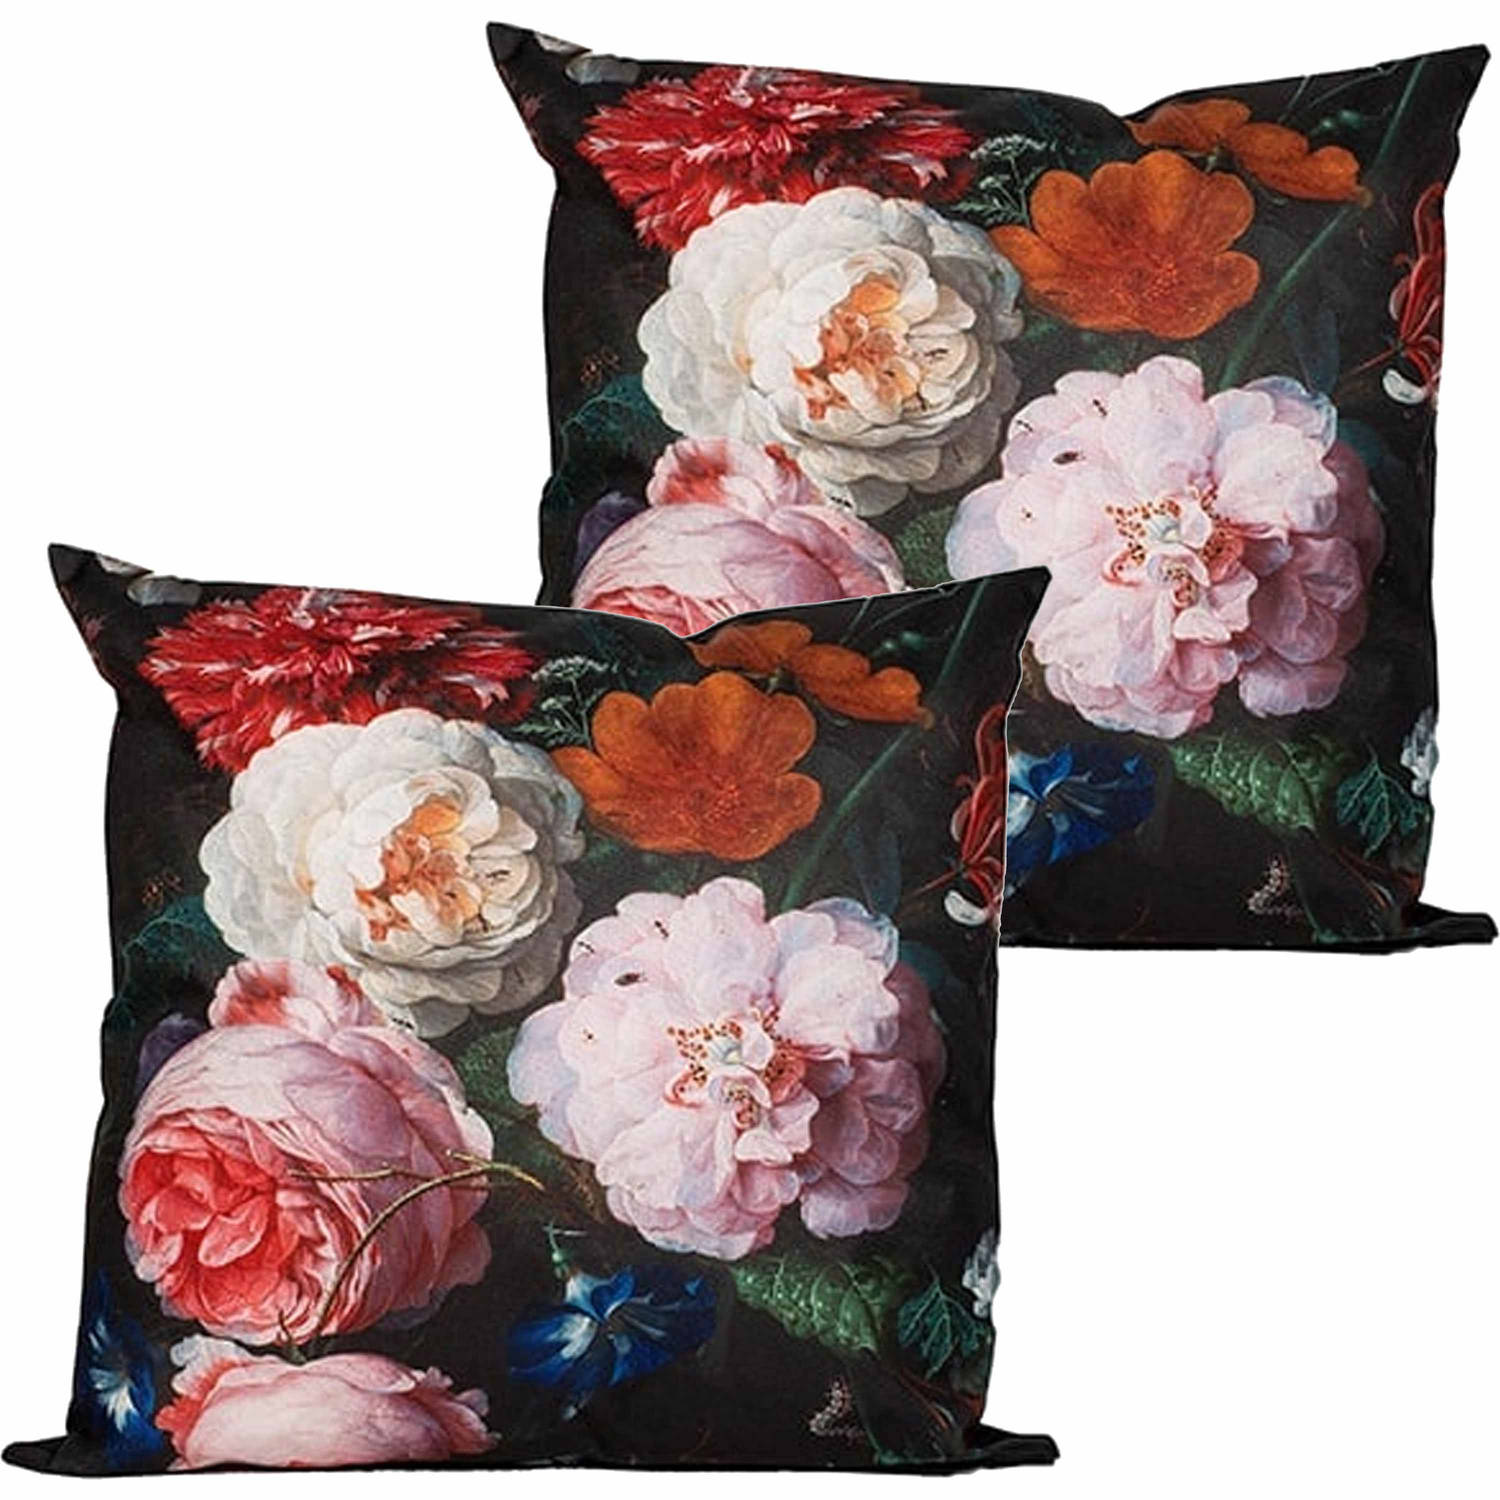 Anna's collection buitenkussen bloem - 2x - zwart/roze - 45 x 45 cm - tuinstoelkussens